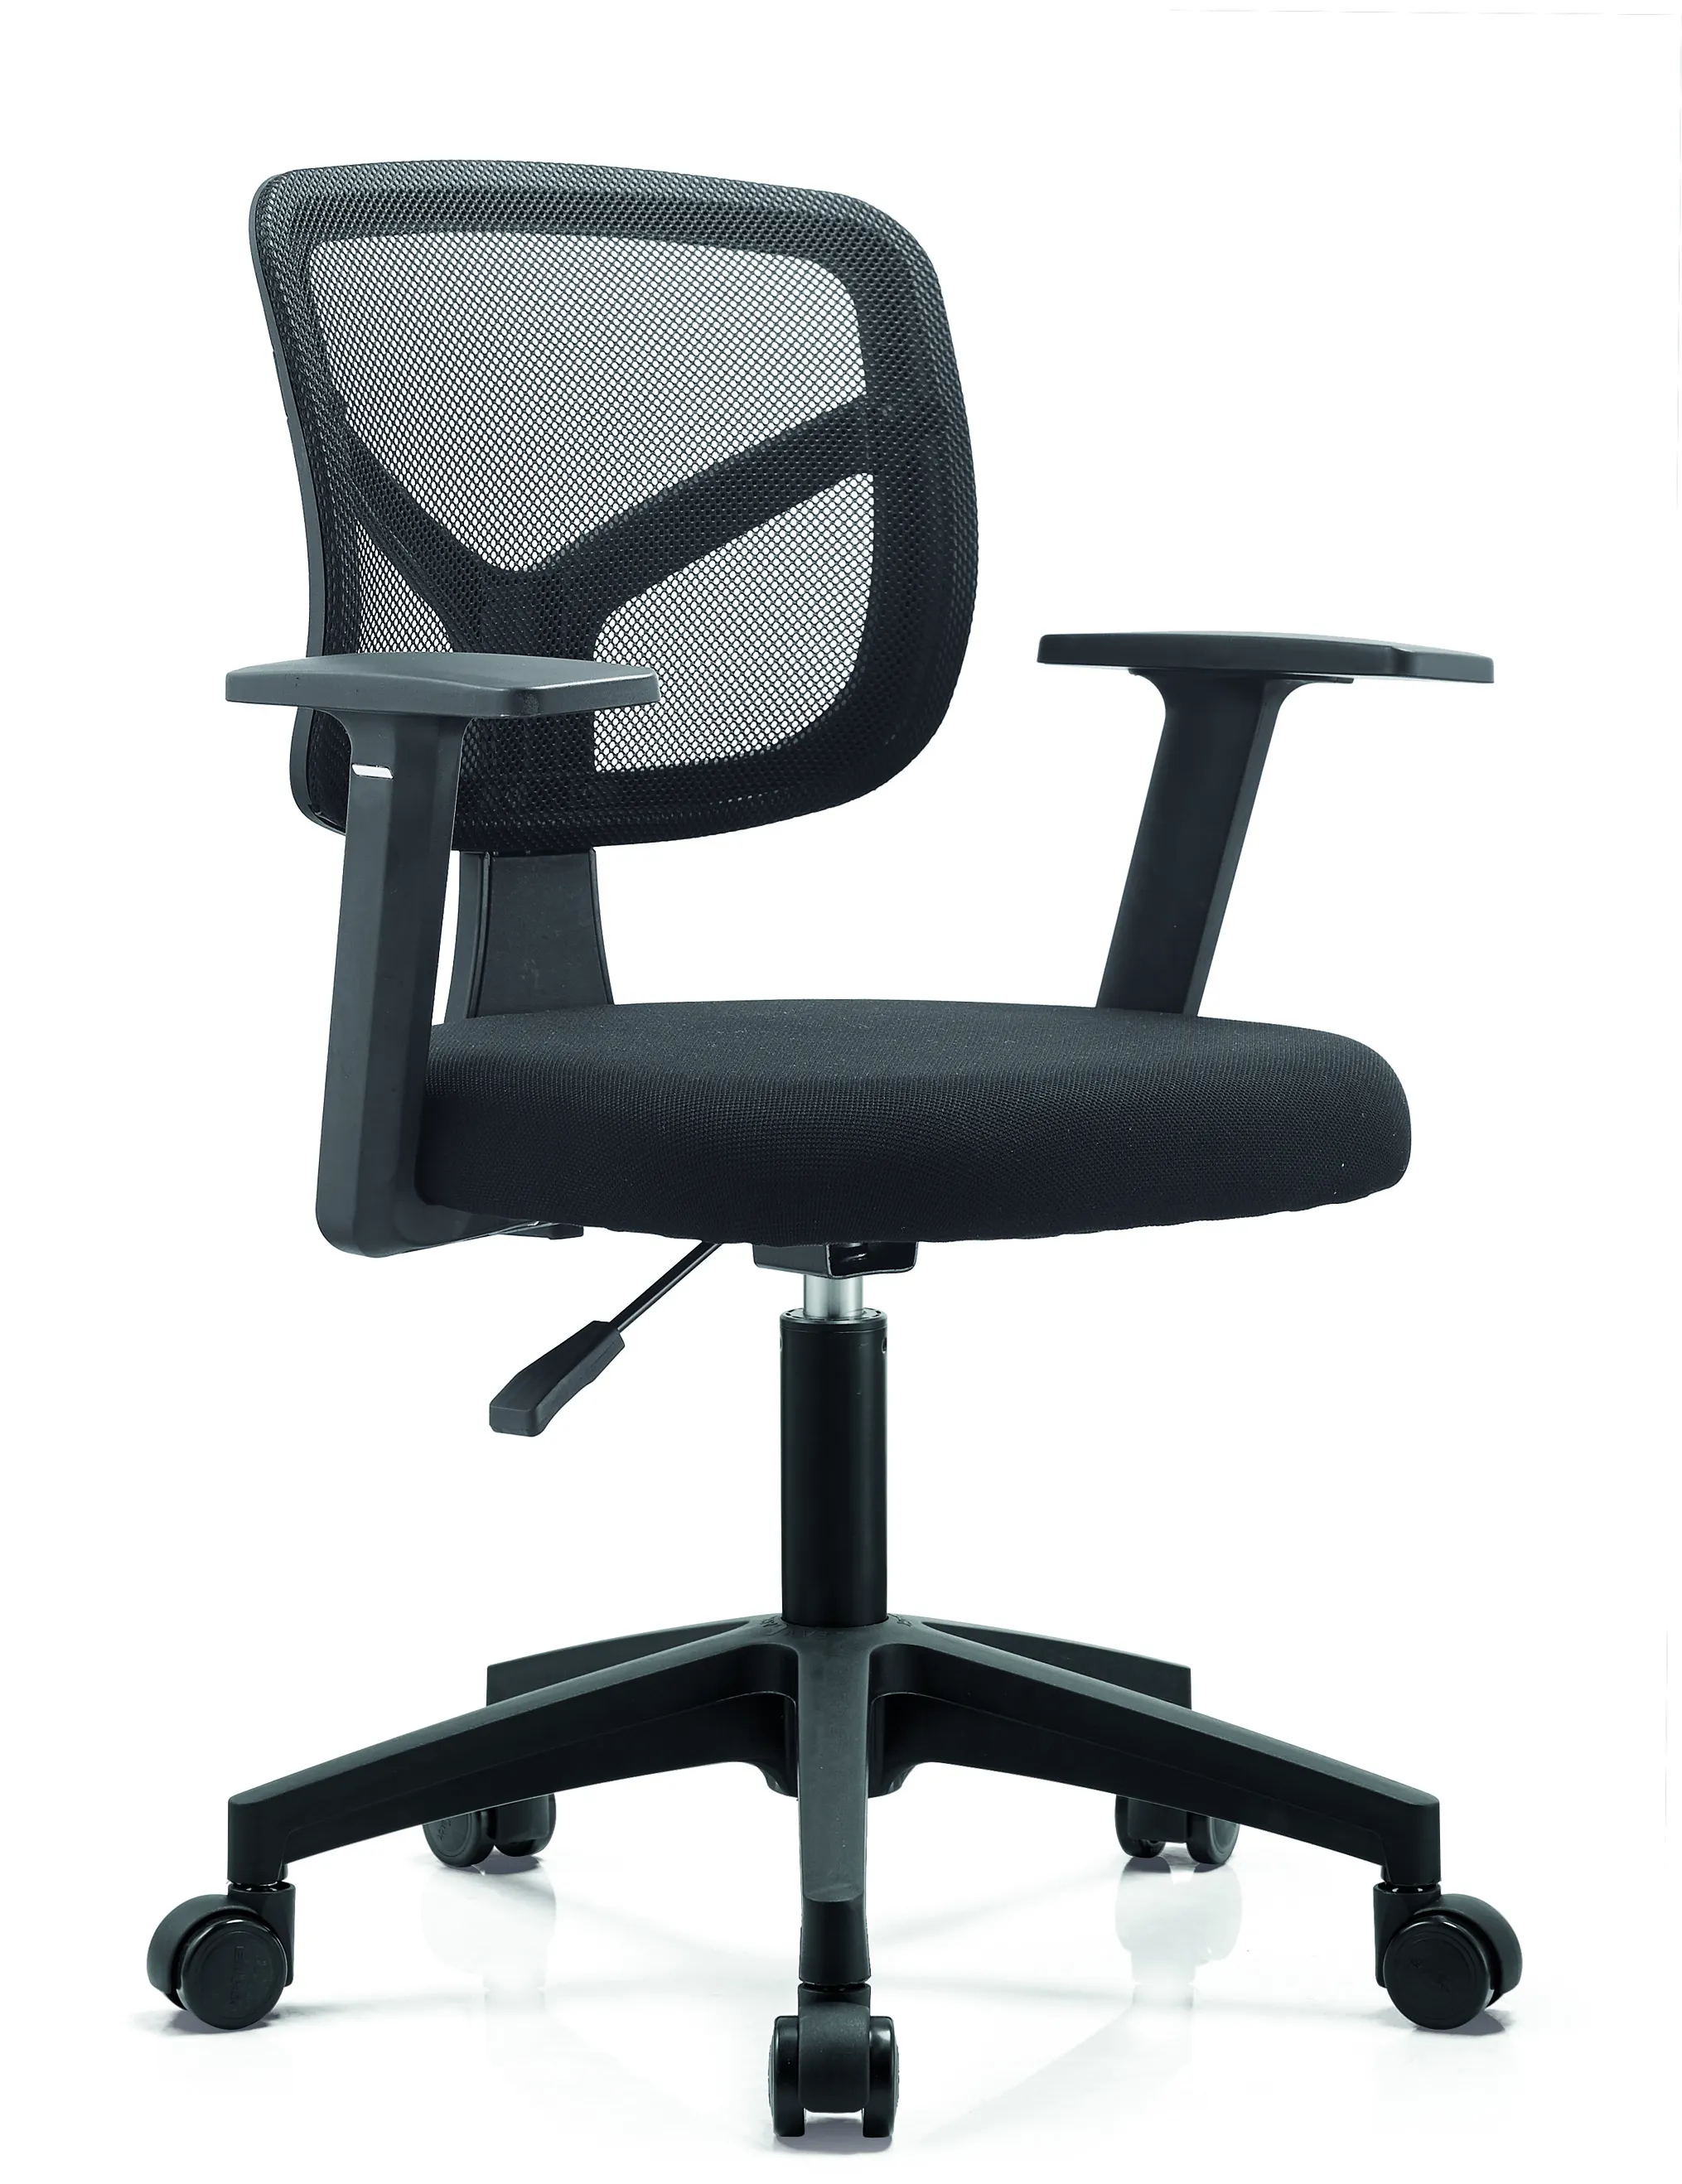 Moderno a schienale basso girevole per computer di casa sedie regolabili in altezza sedia da ufficio per mobili da ufficio